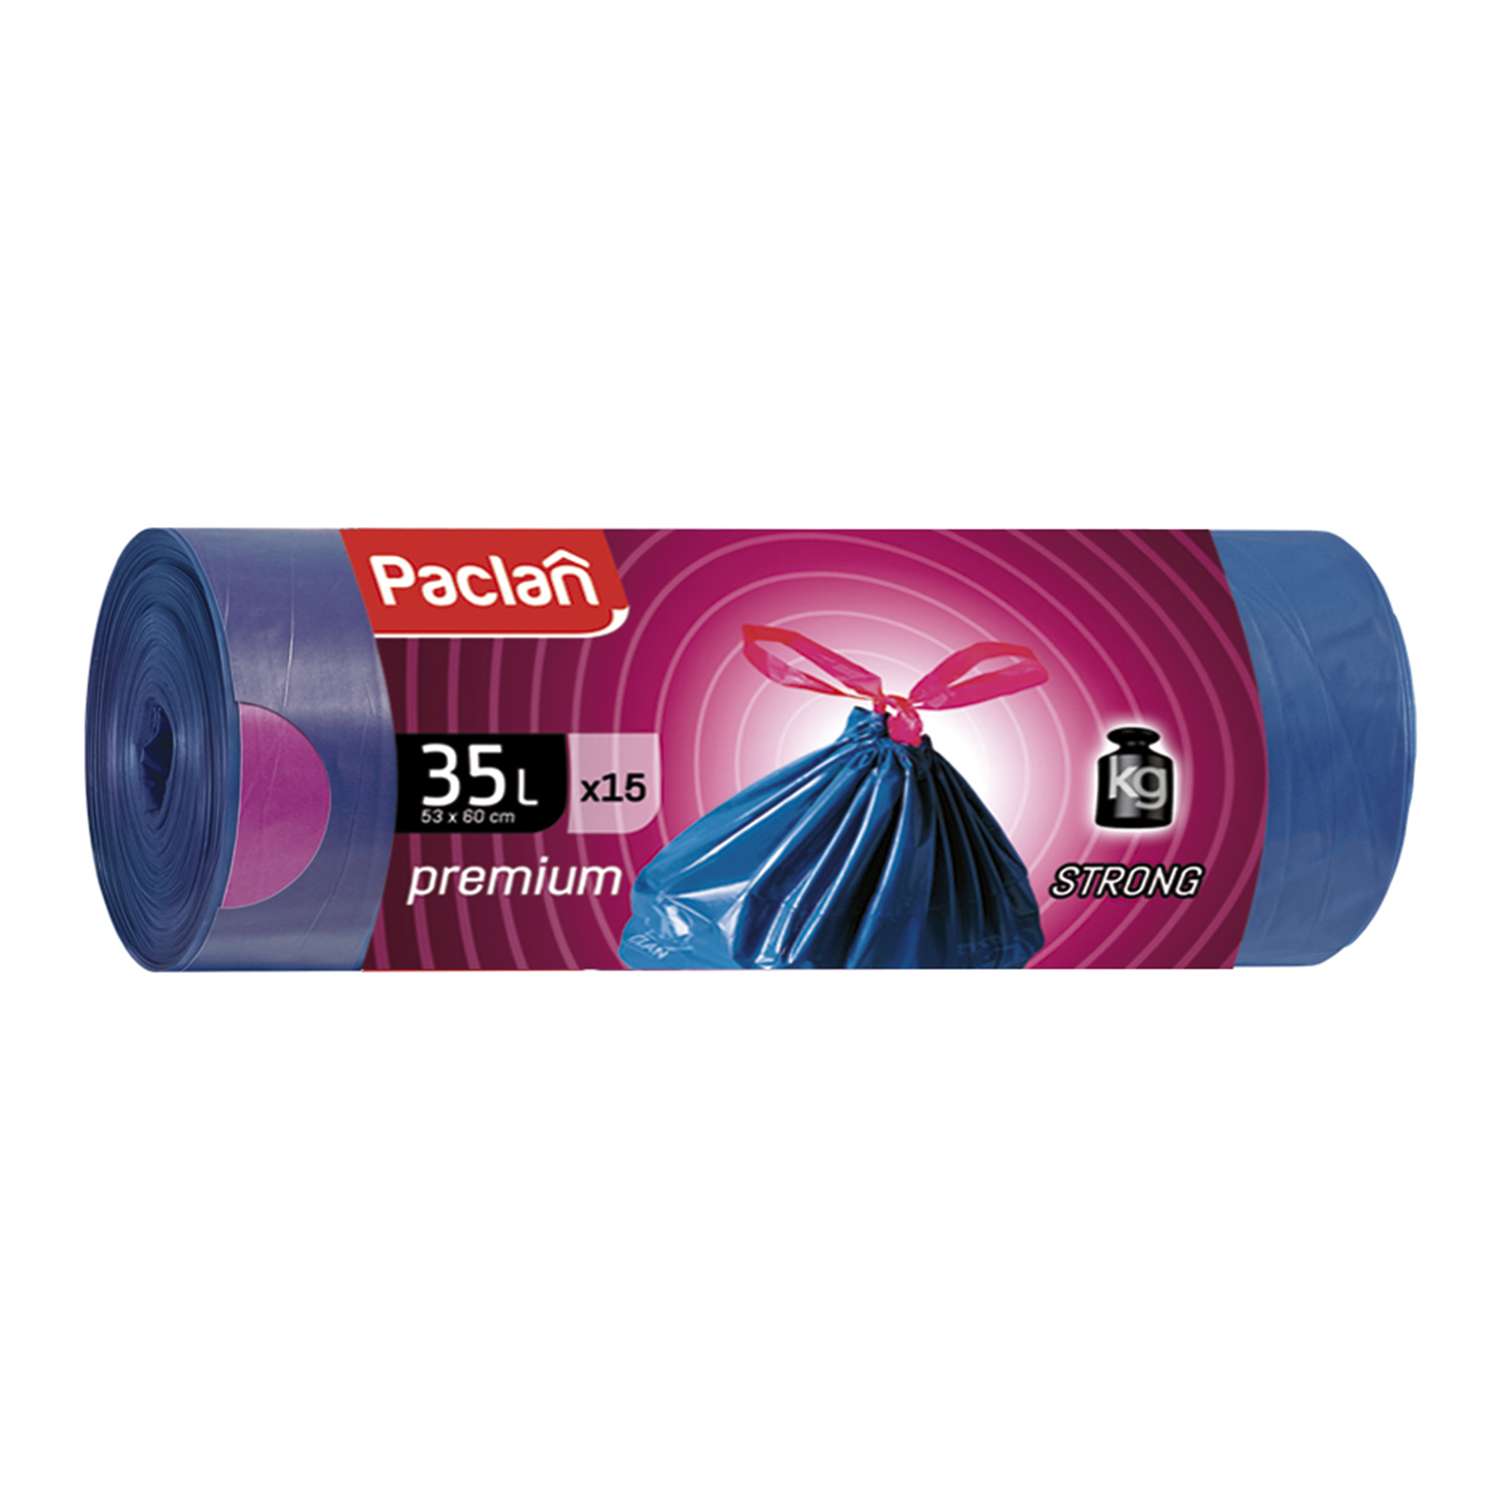 Мешки для мусора Paclan Premium 35л 15шт - фото 1